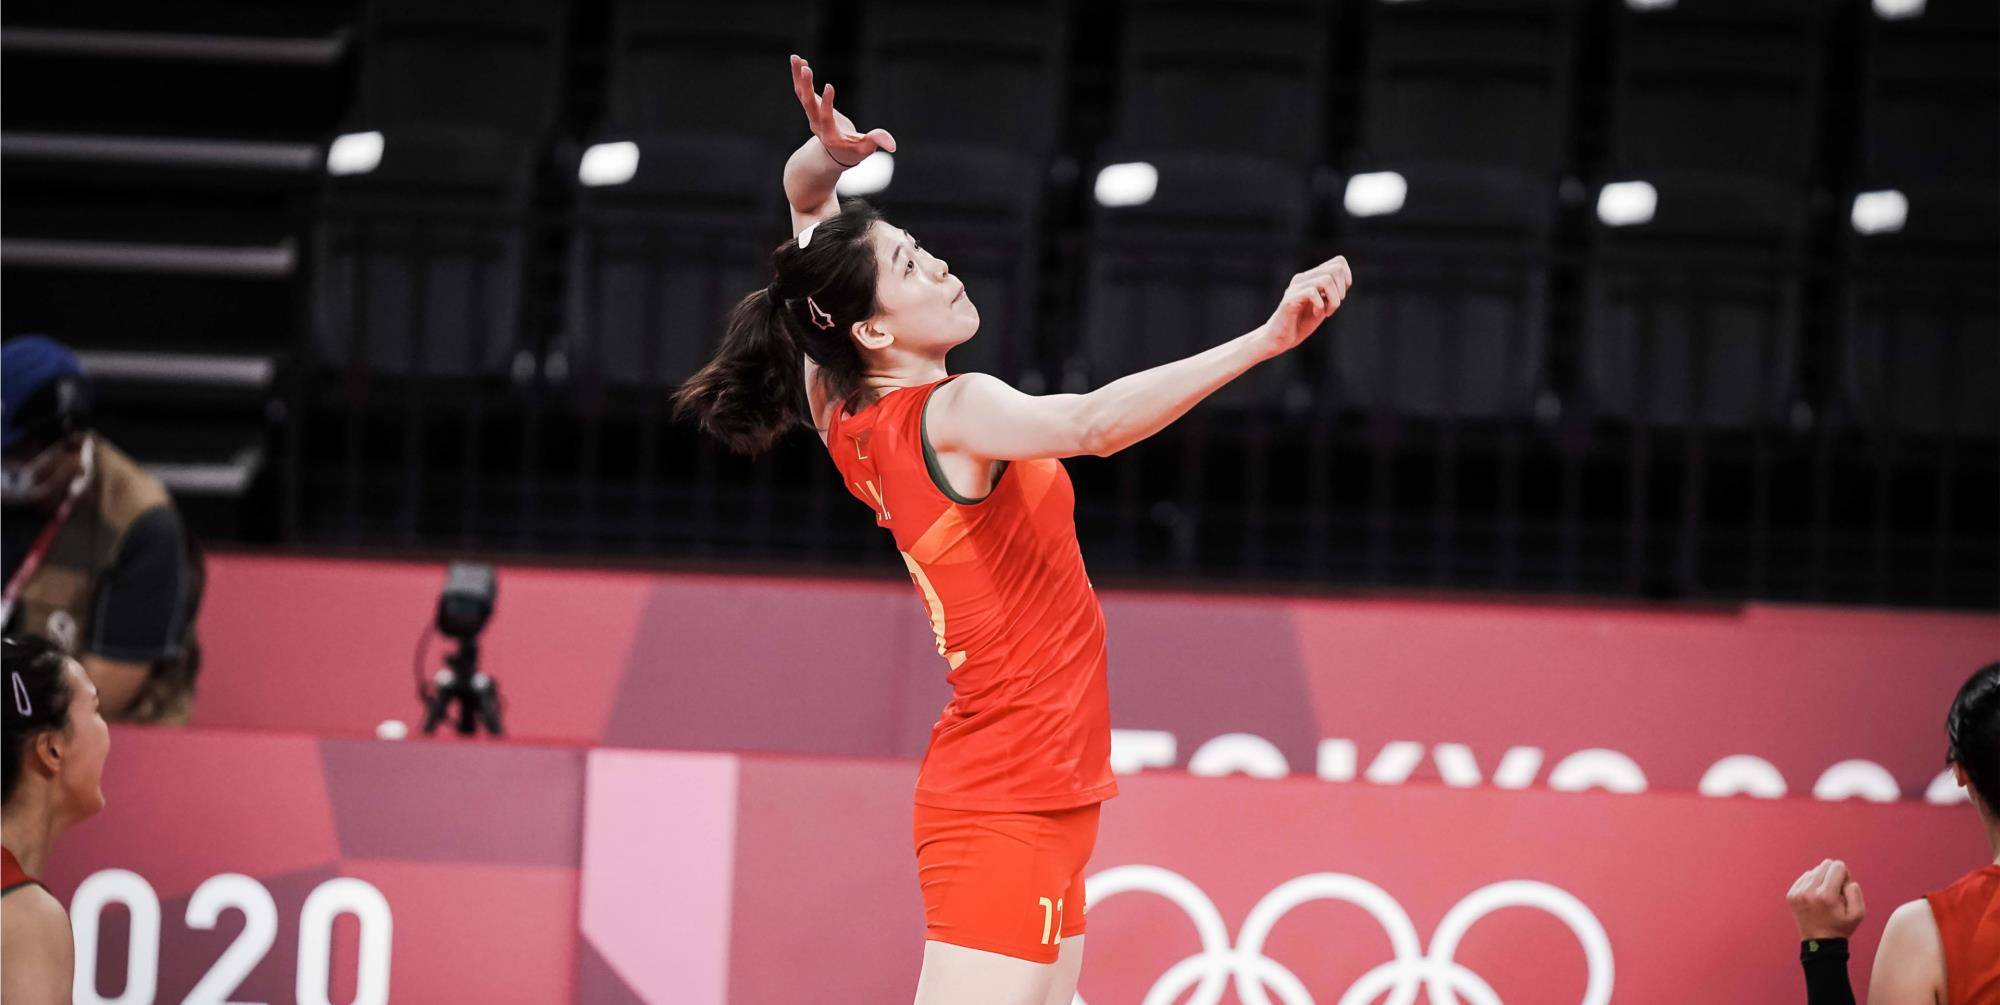 原创李盈莹!东京奥运会中唯一一名可以昂首离开赛场的中国女排球员